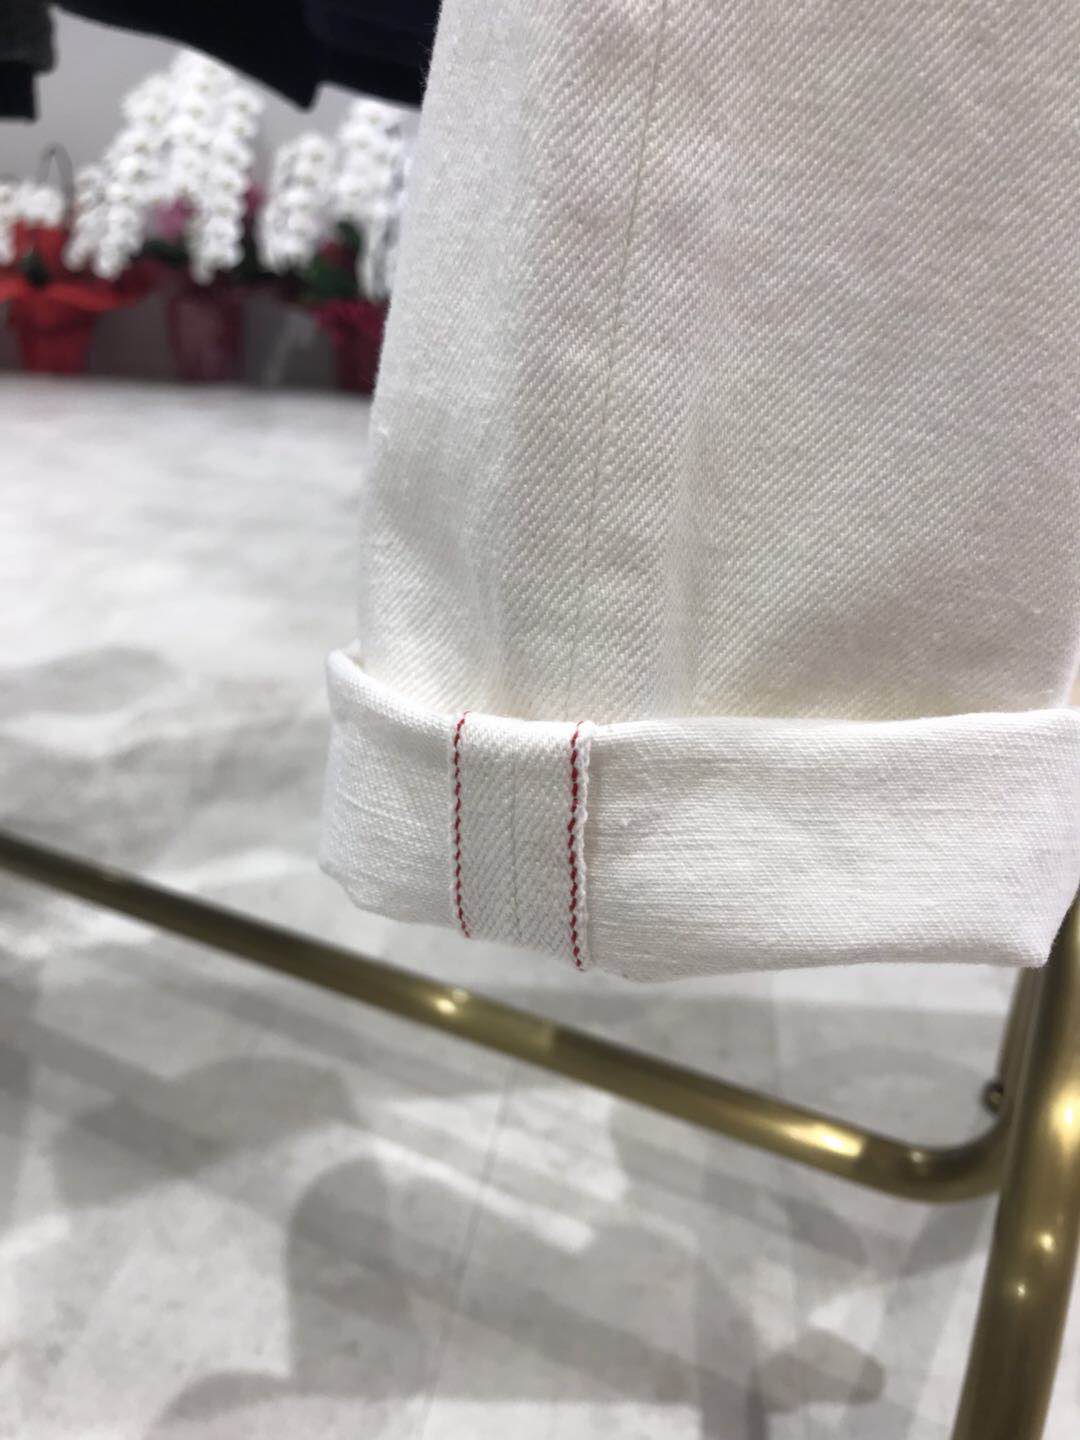 ジーパンの裾によく見かける赤い線縫ってる部分の名称ご存じでしょうか